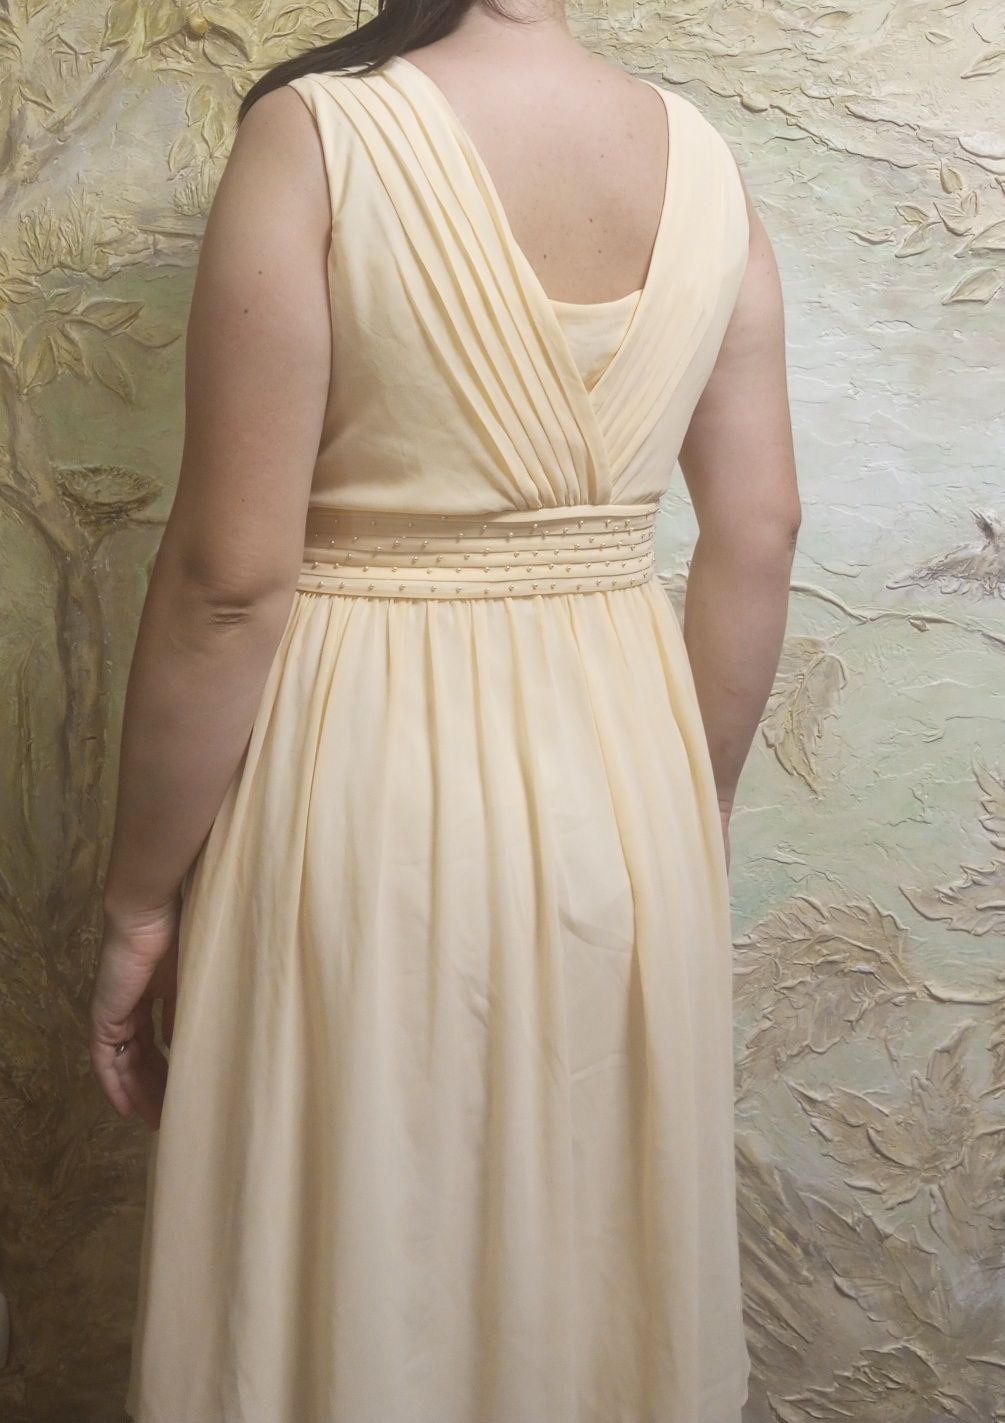 Святкова світла сукня, платье на 48-50 р
Kaliko